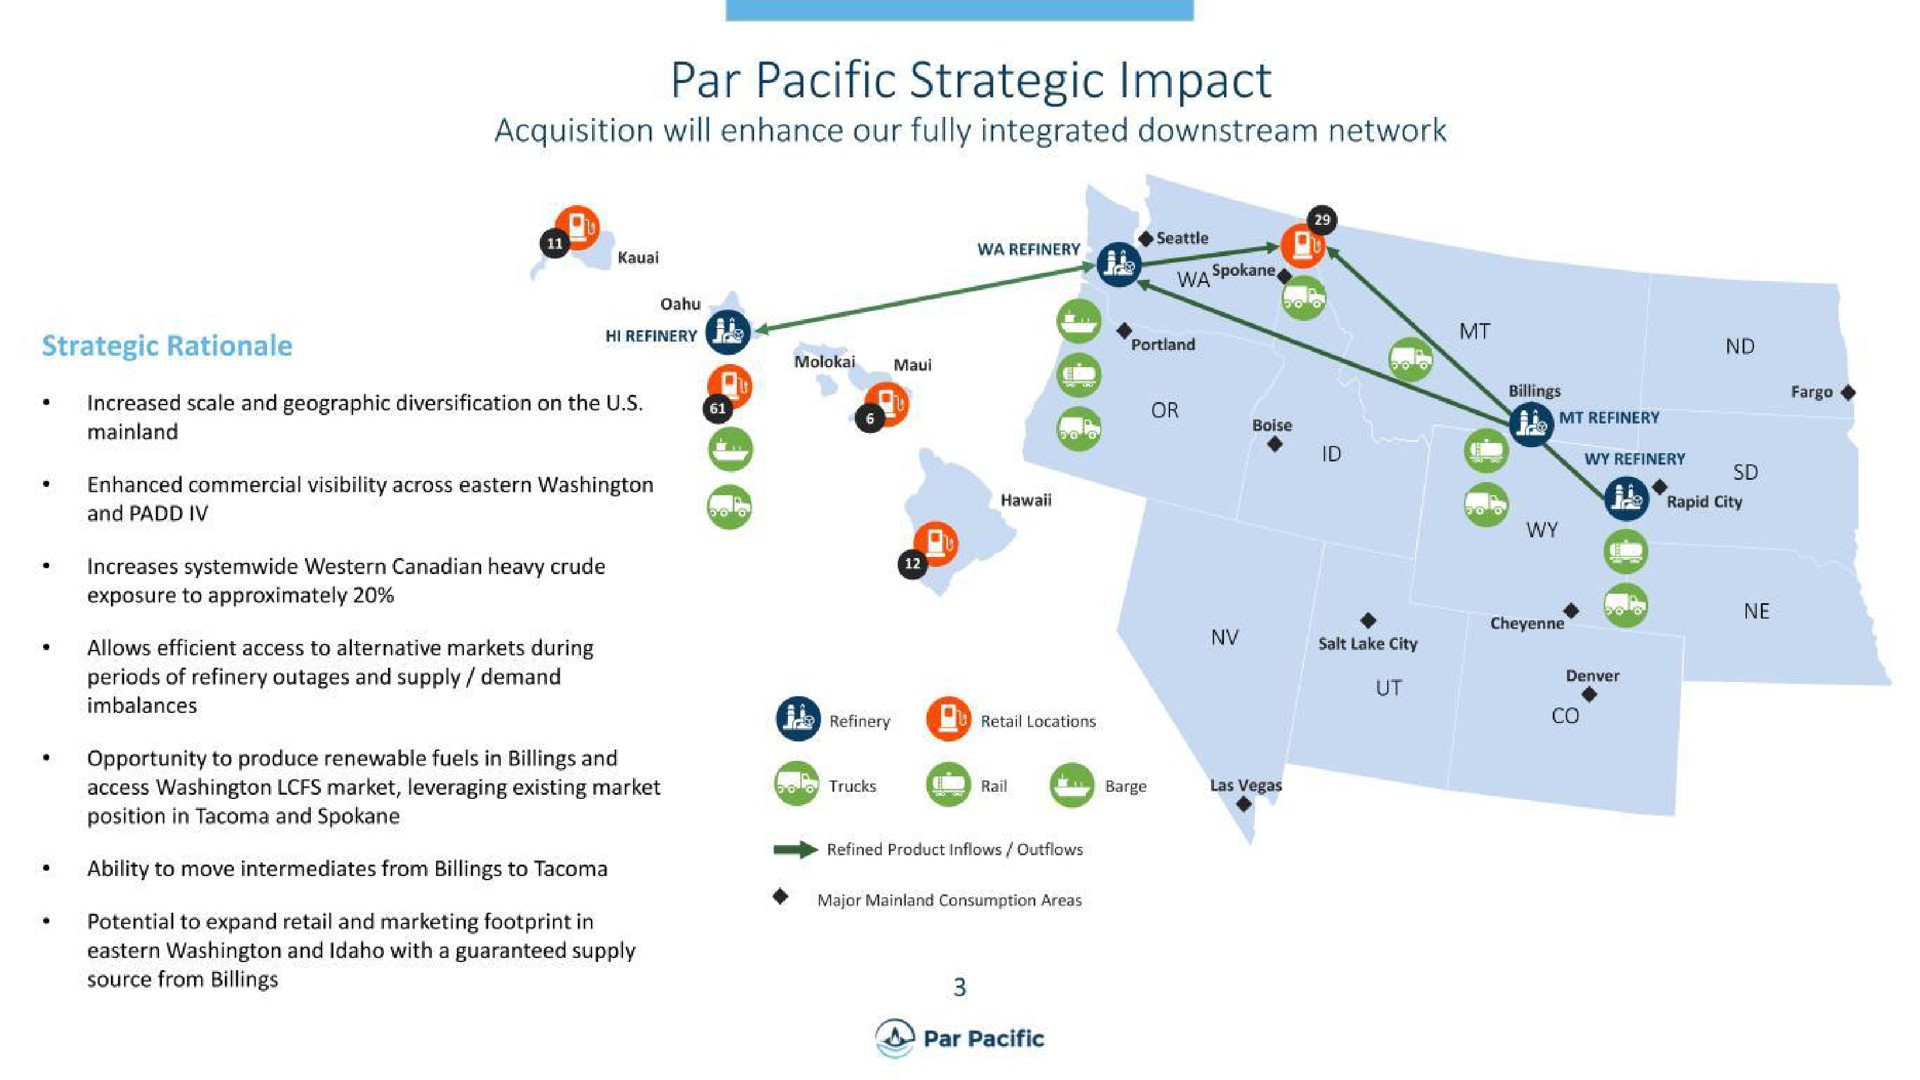 par pacific strategic impact | Par Pacific